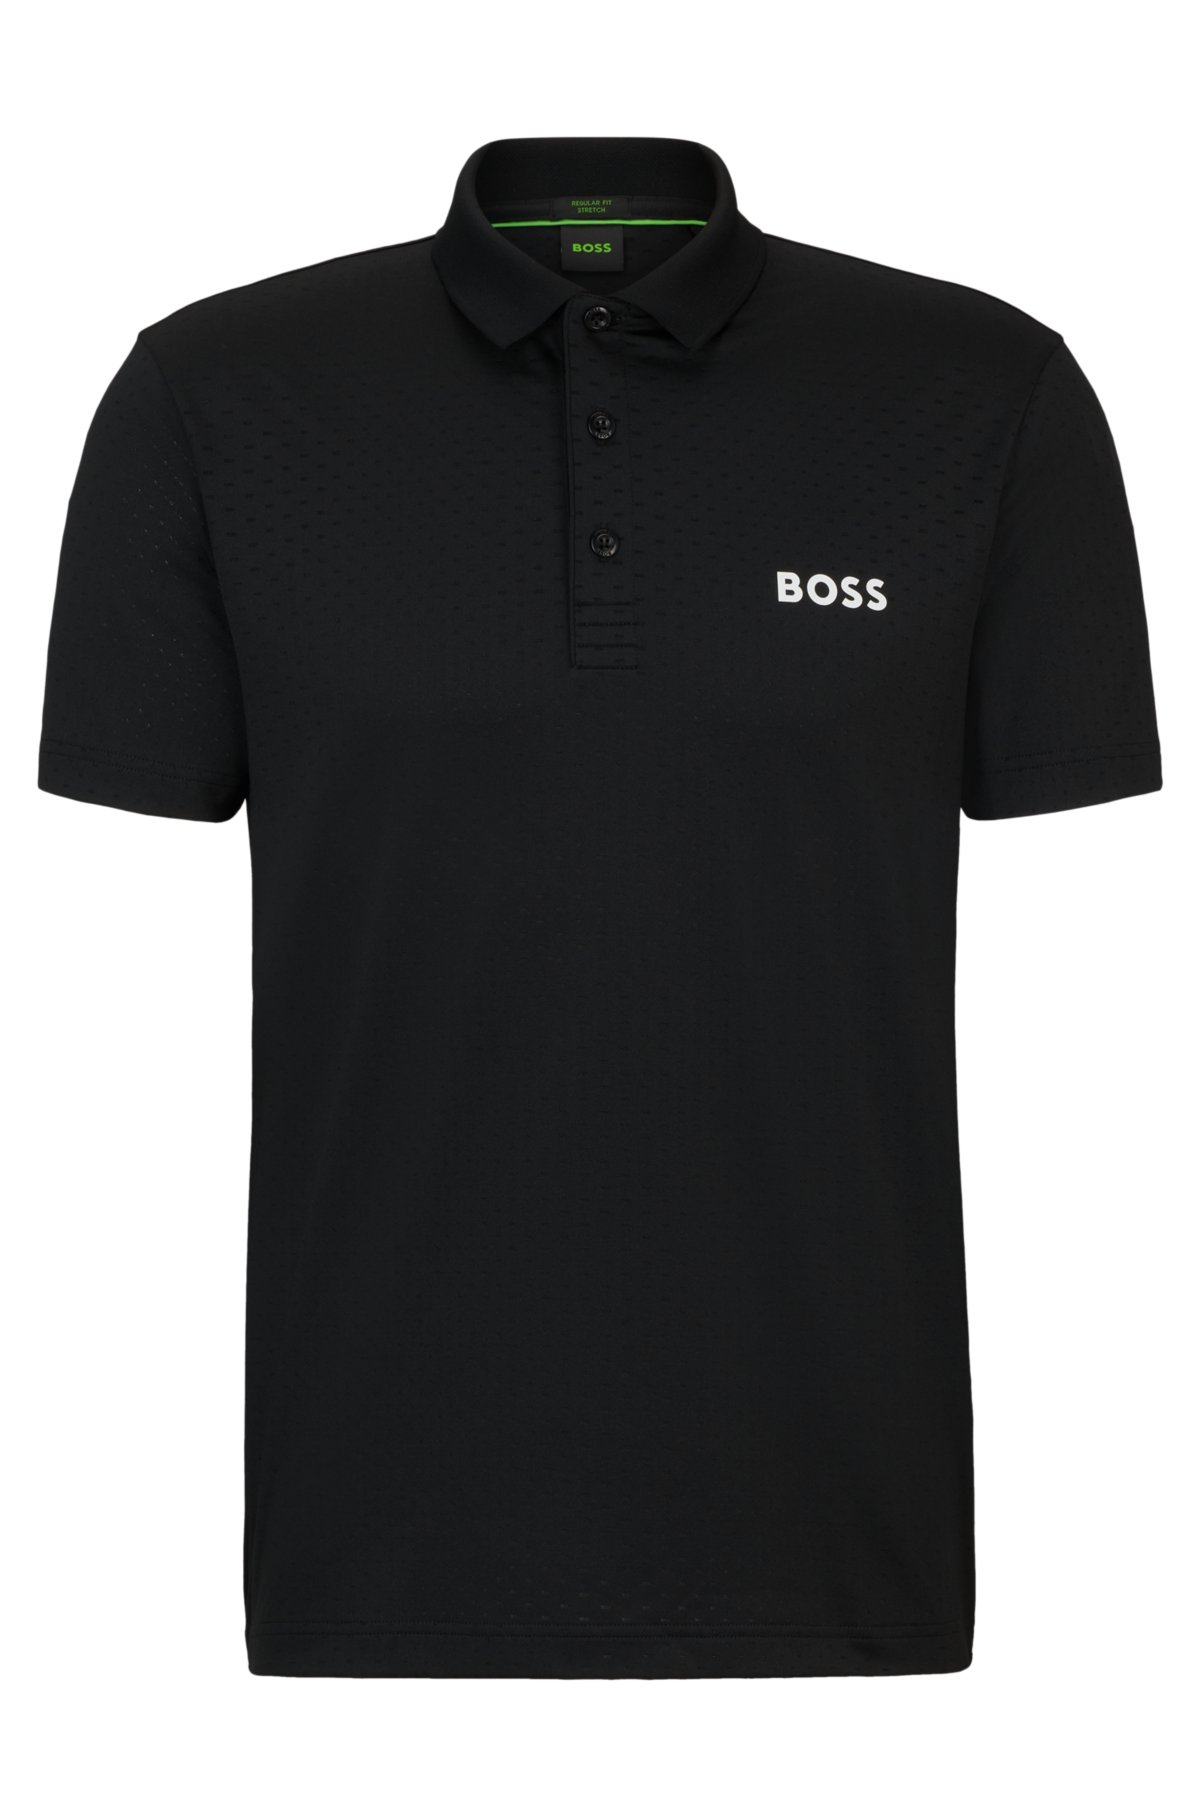 Degradé-jacquard polo shirt with contrast logo, Black